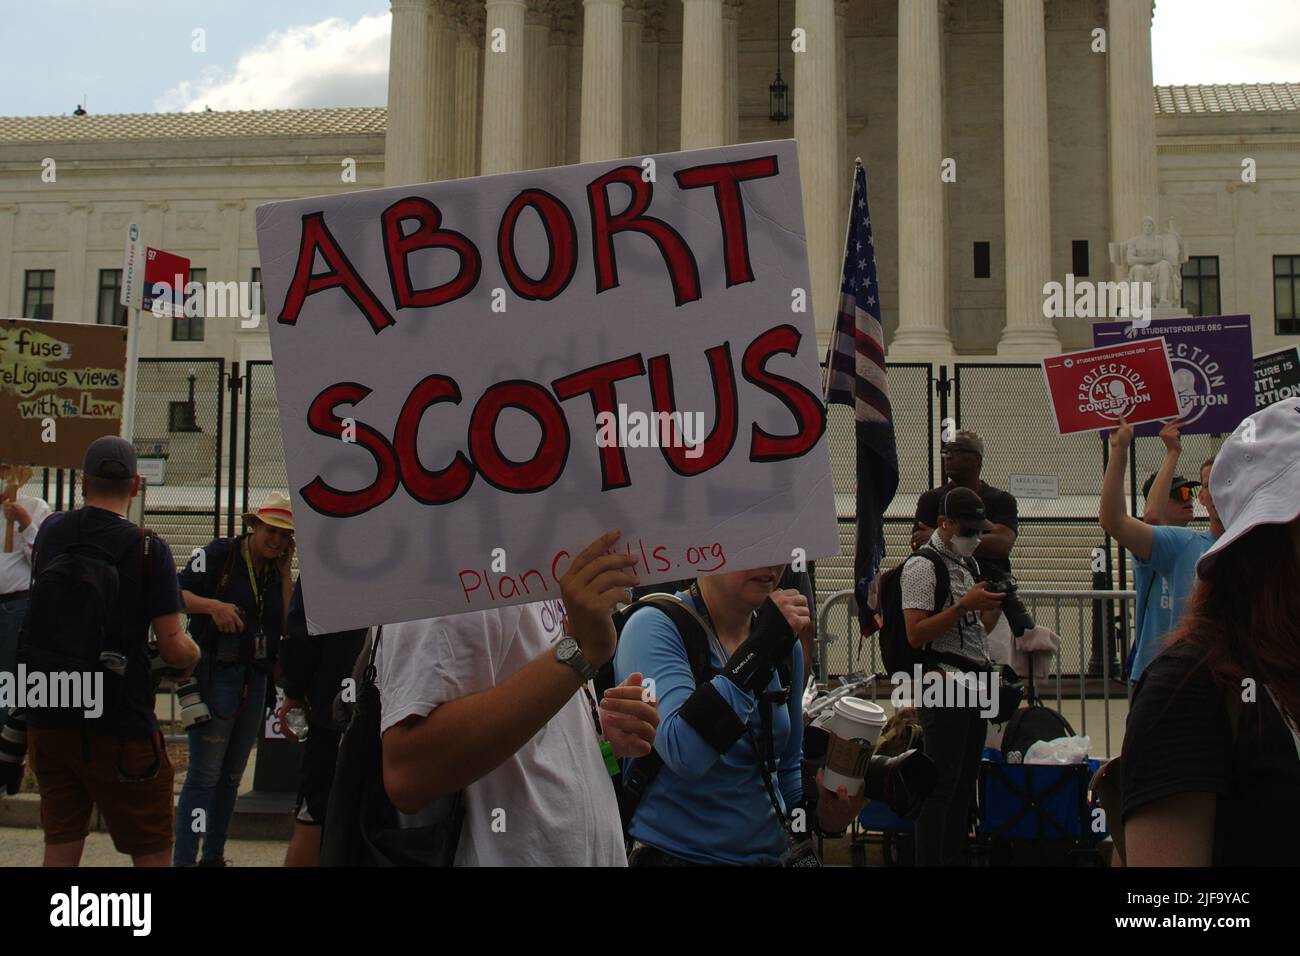 Des manifestants se sont rassemblés devant la Cour suprême des États-Unis après que la décision historique Roe c. Wade légalisant l'avortement ait été renversée le 24 juin 2022. Banque D'Images